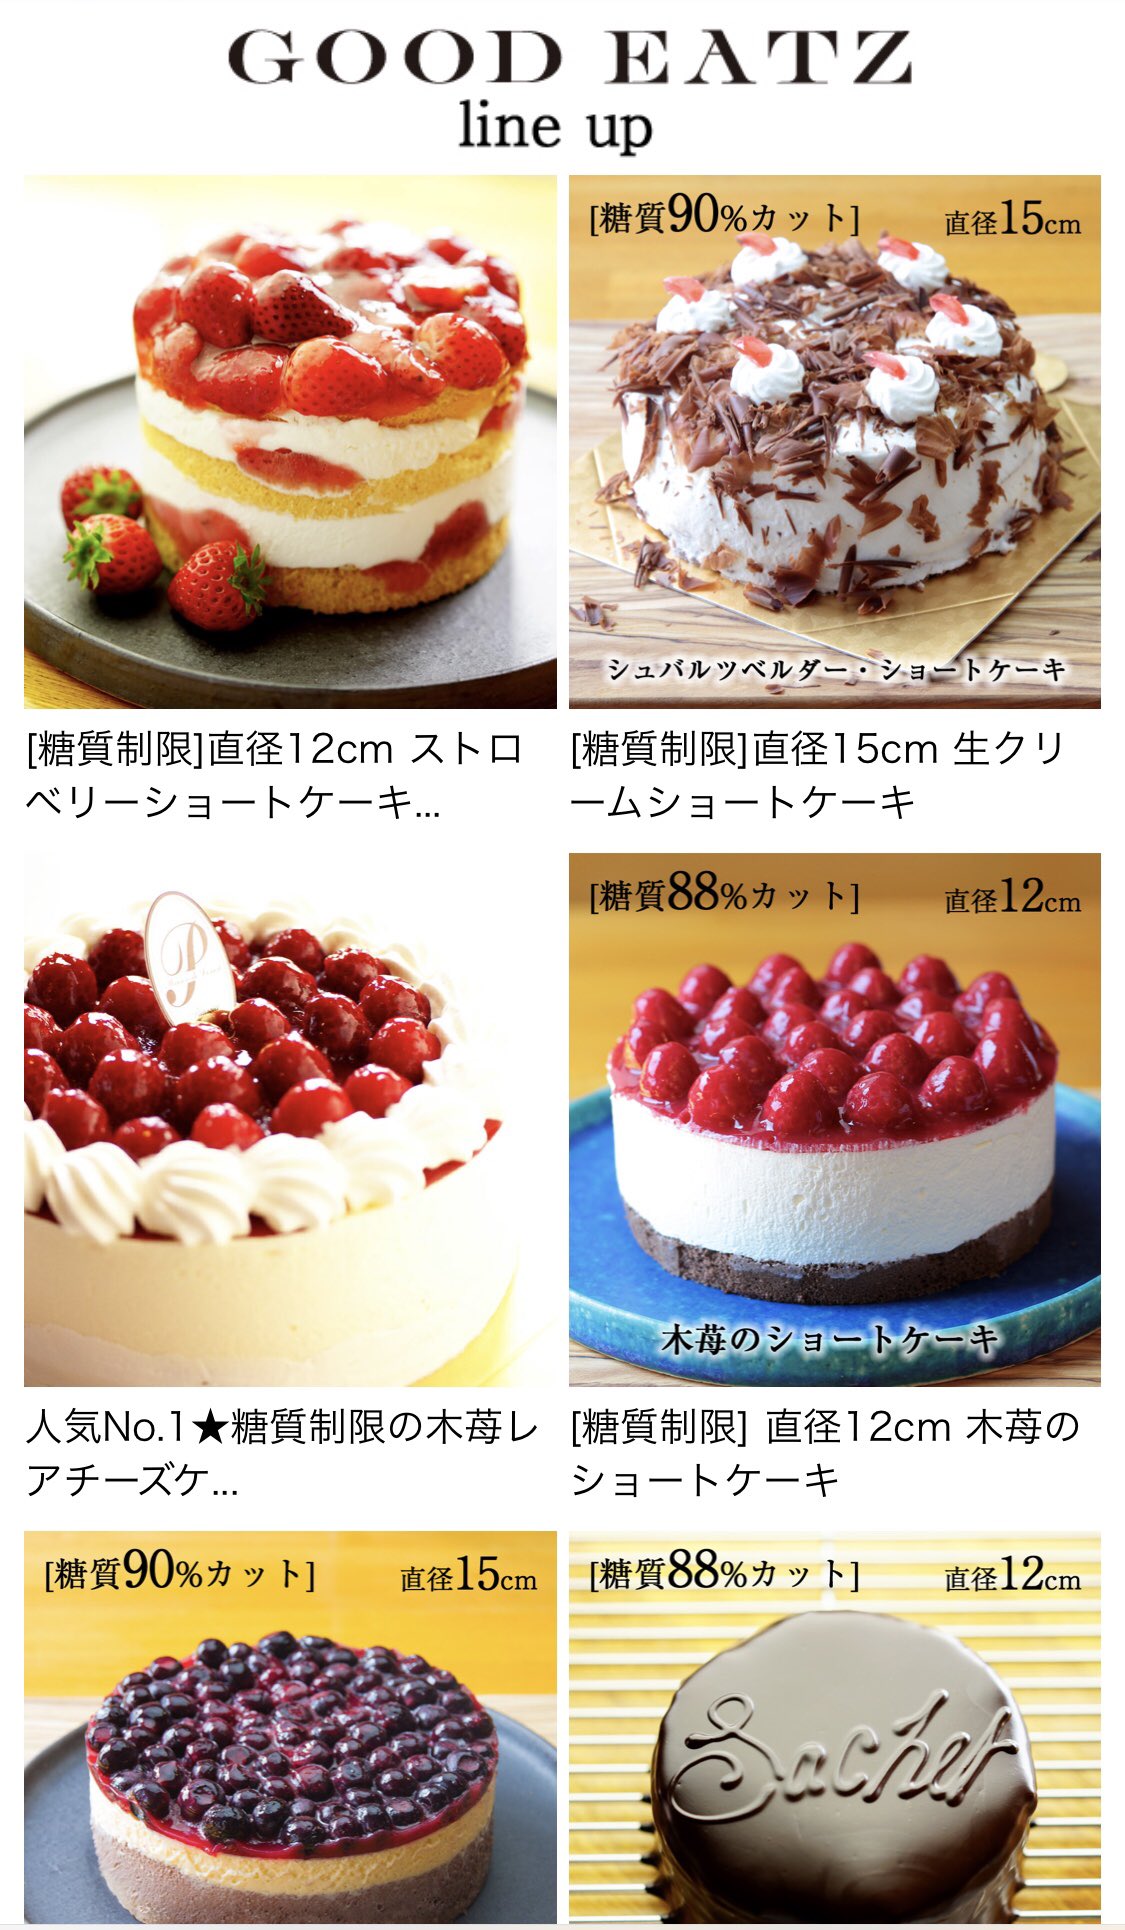 ダイエット中の人にもオススメ 糖質カットされた Goodeatz のケーキ 話題の画像プラス